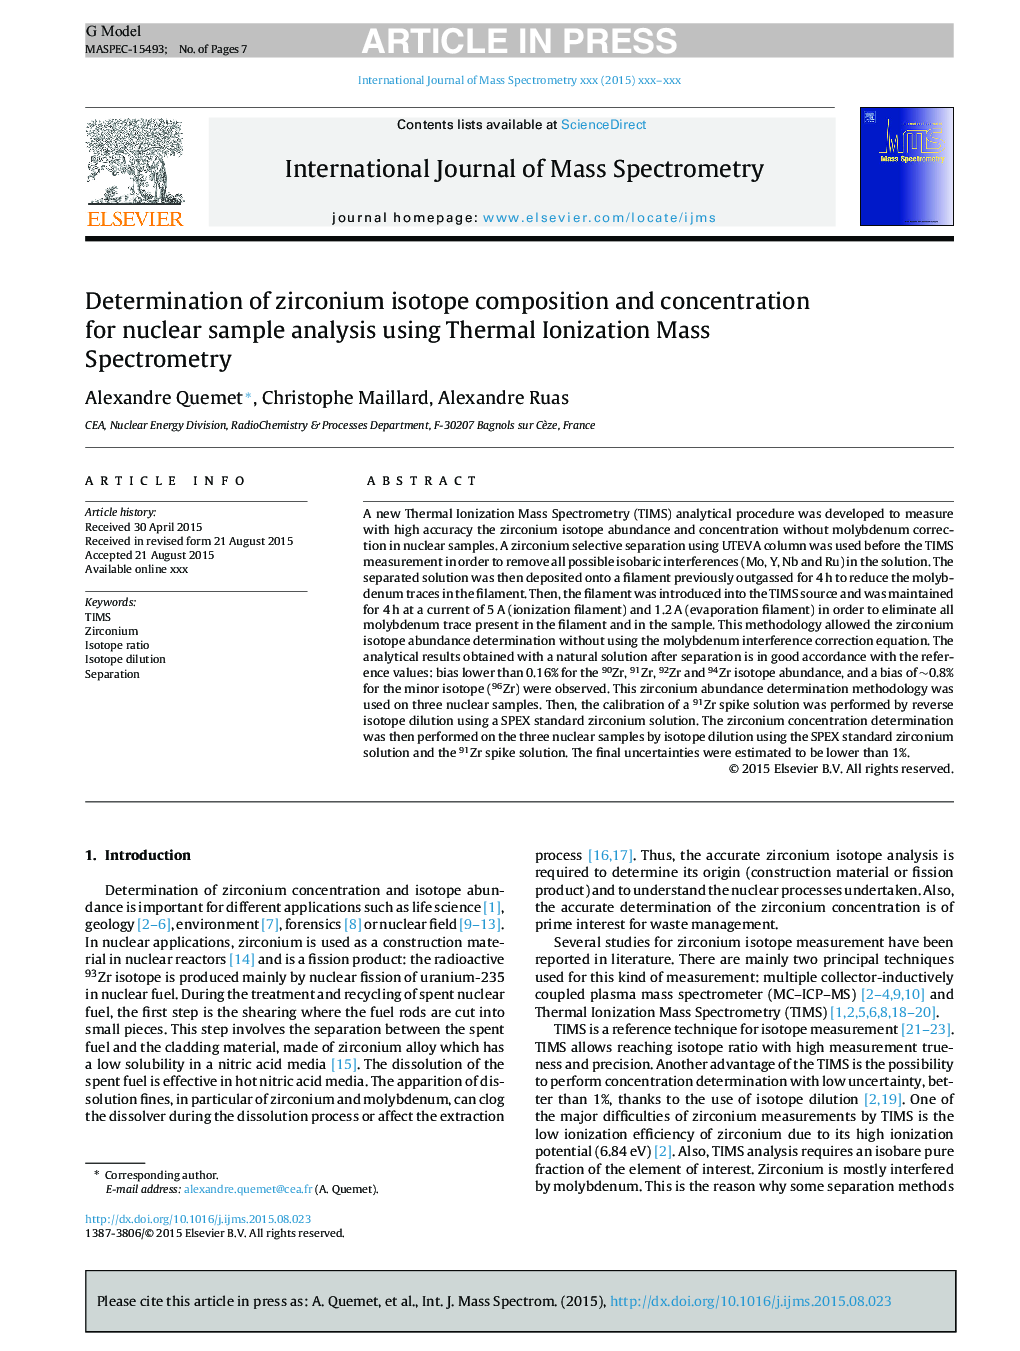 تعیین ترکیب و غلظت ایزوتوپ زیرکونیم برای تجزیه و تحلیل نمونه های اتمی با استفاده از طیف سنجی جرمی یونیزاسیون حرارتی 